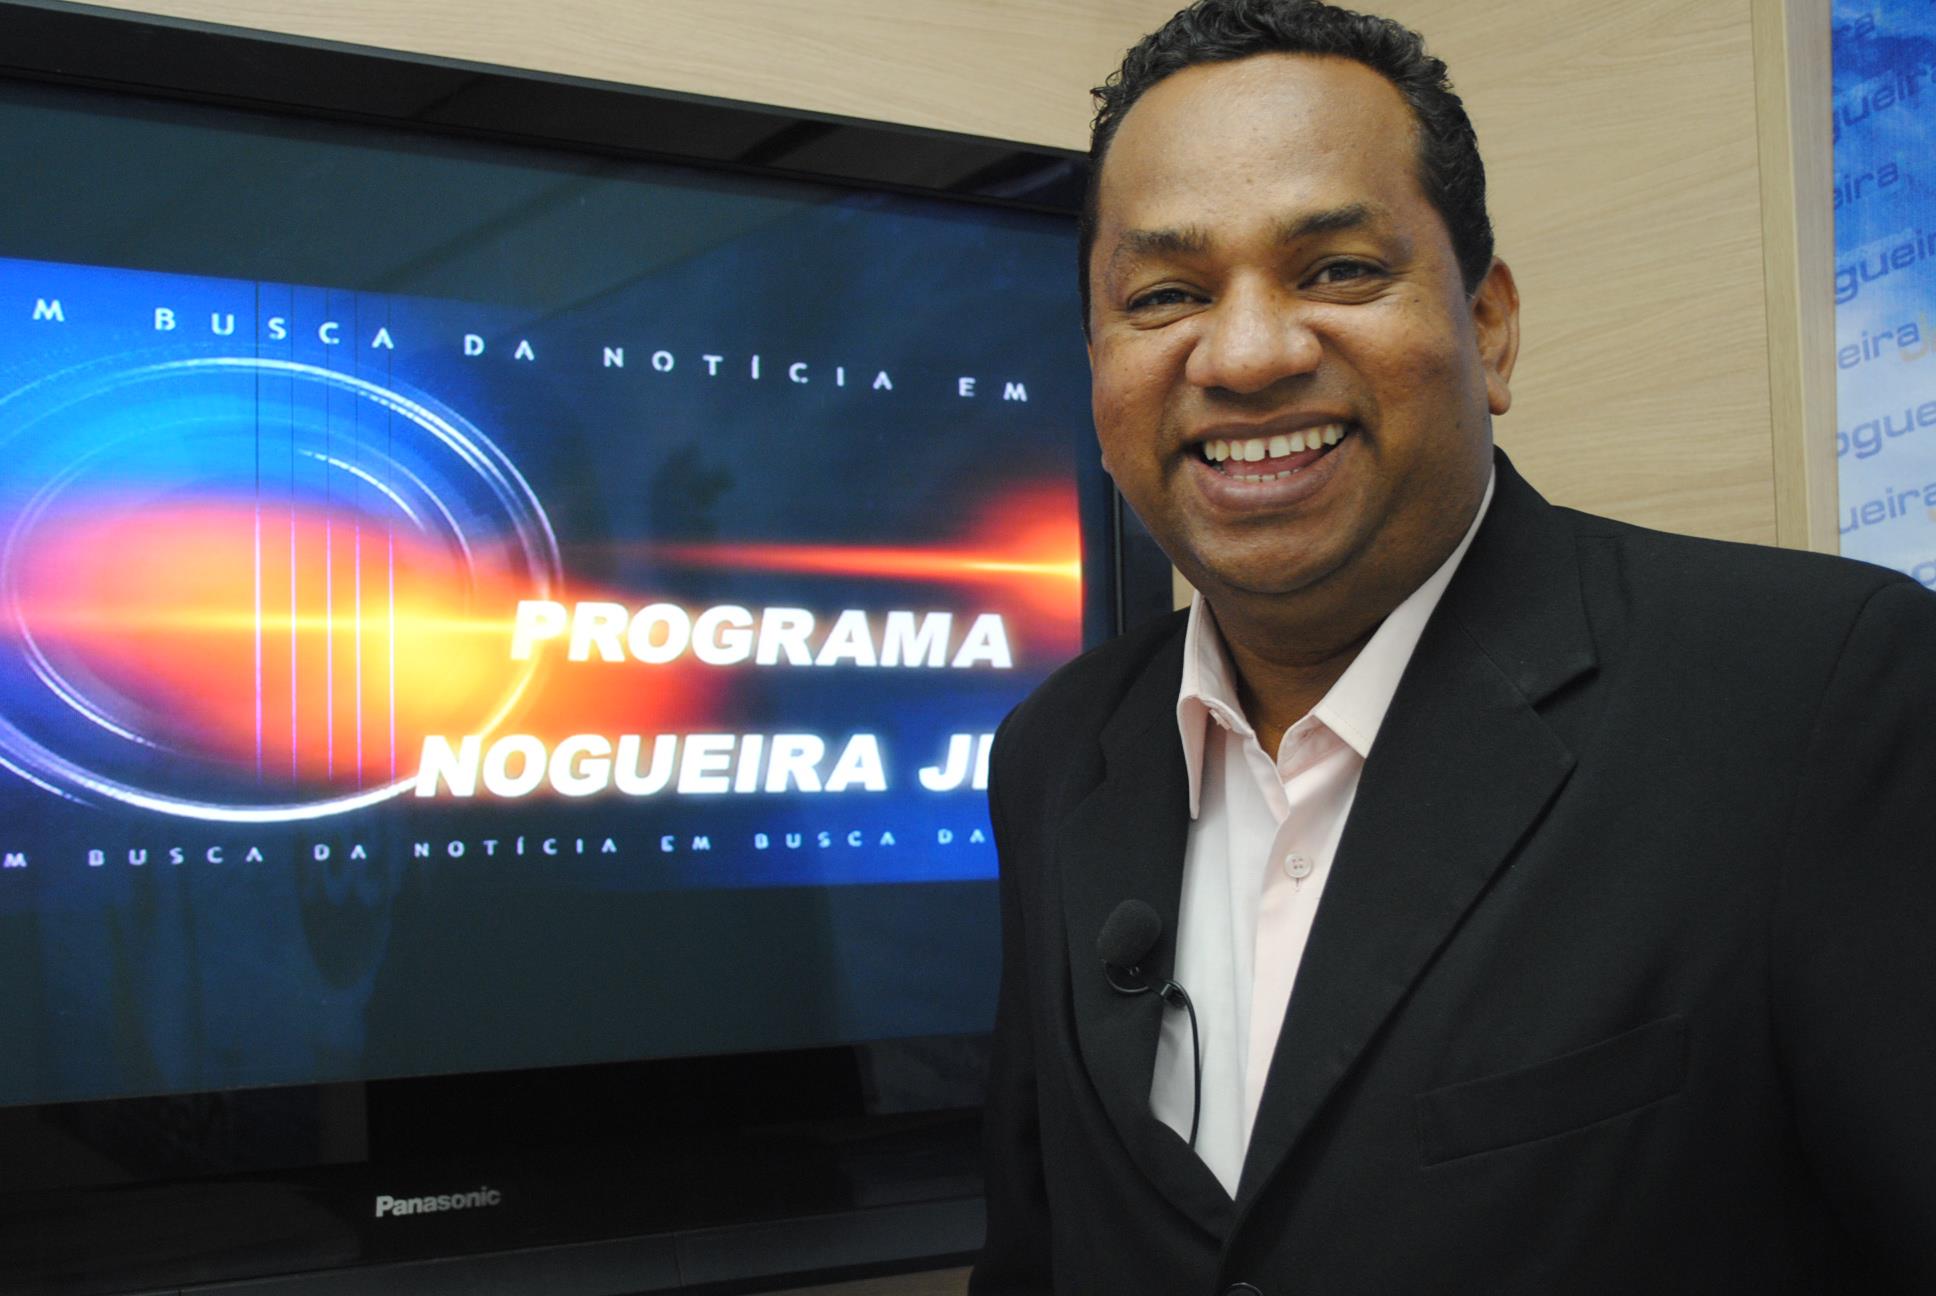 Nogueira Jr. Comunicador, radialista e apresentador de TV